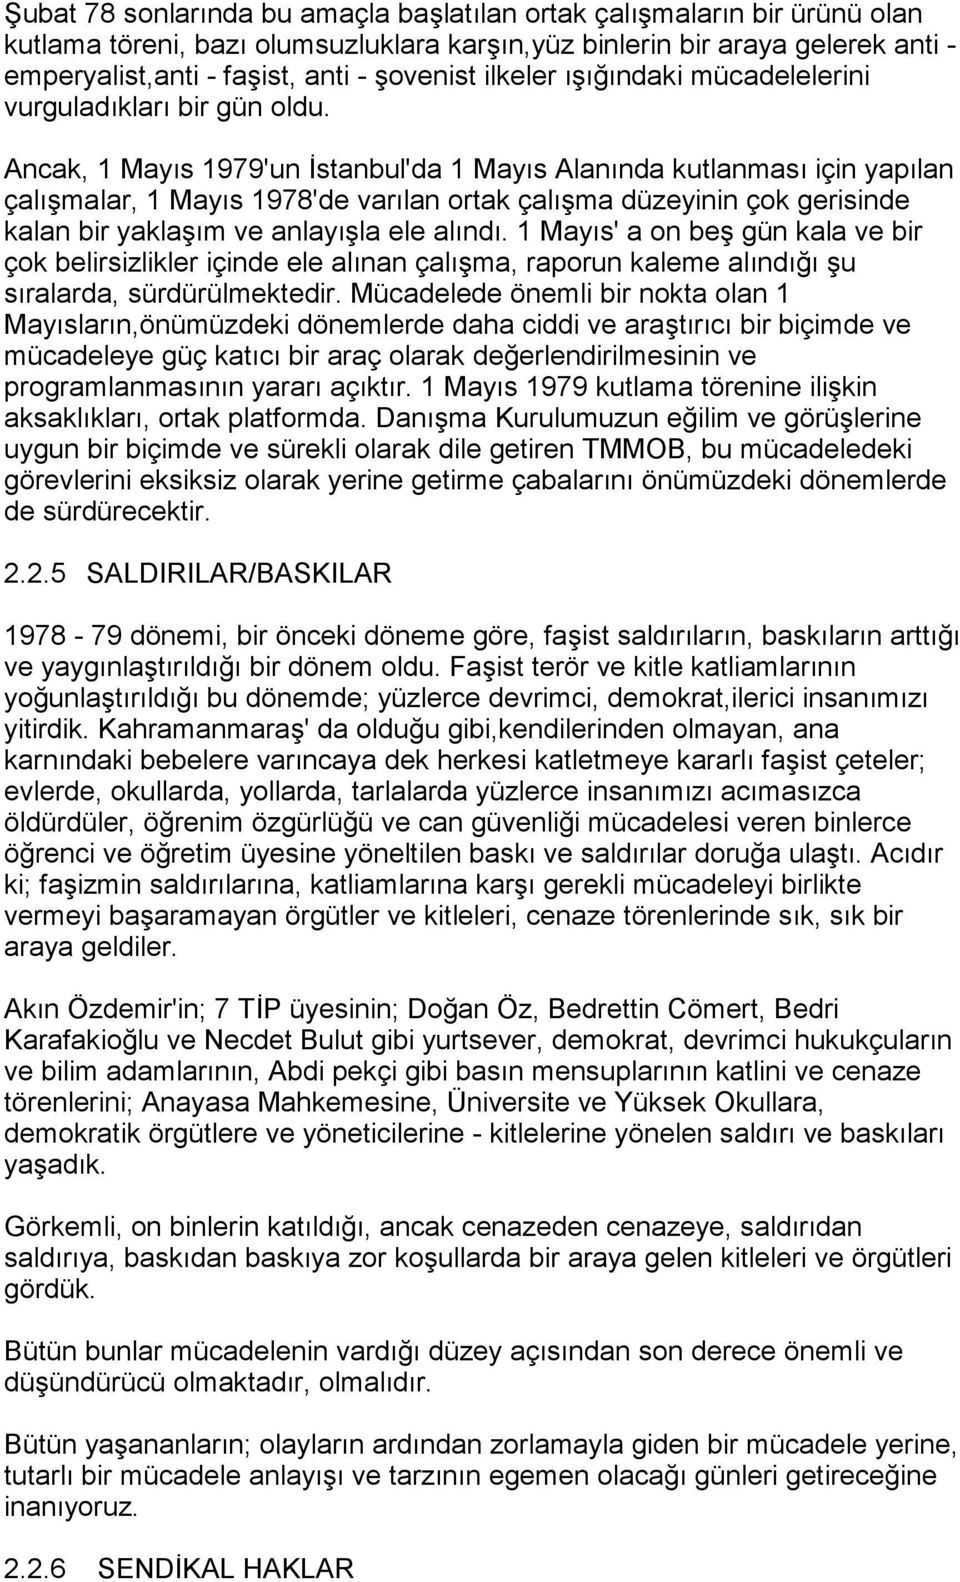 Ancak, 1 Mayõs 1979'un İstanbul'da 1 Mayõs Alanõnda kutlanmasõ için yapõlan çalõşmalar, 1 Mayõs 1978'de varõlan ortak çalõşma düzeyinin çok gerisinde kalan bir yaklaşõm ve anlayõşla ele alõndõ.